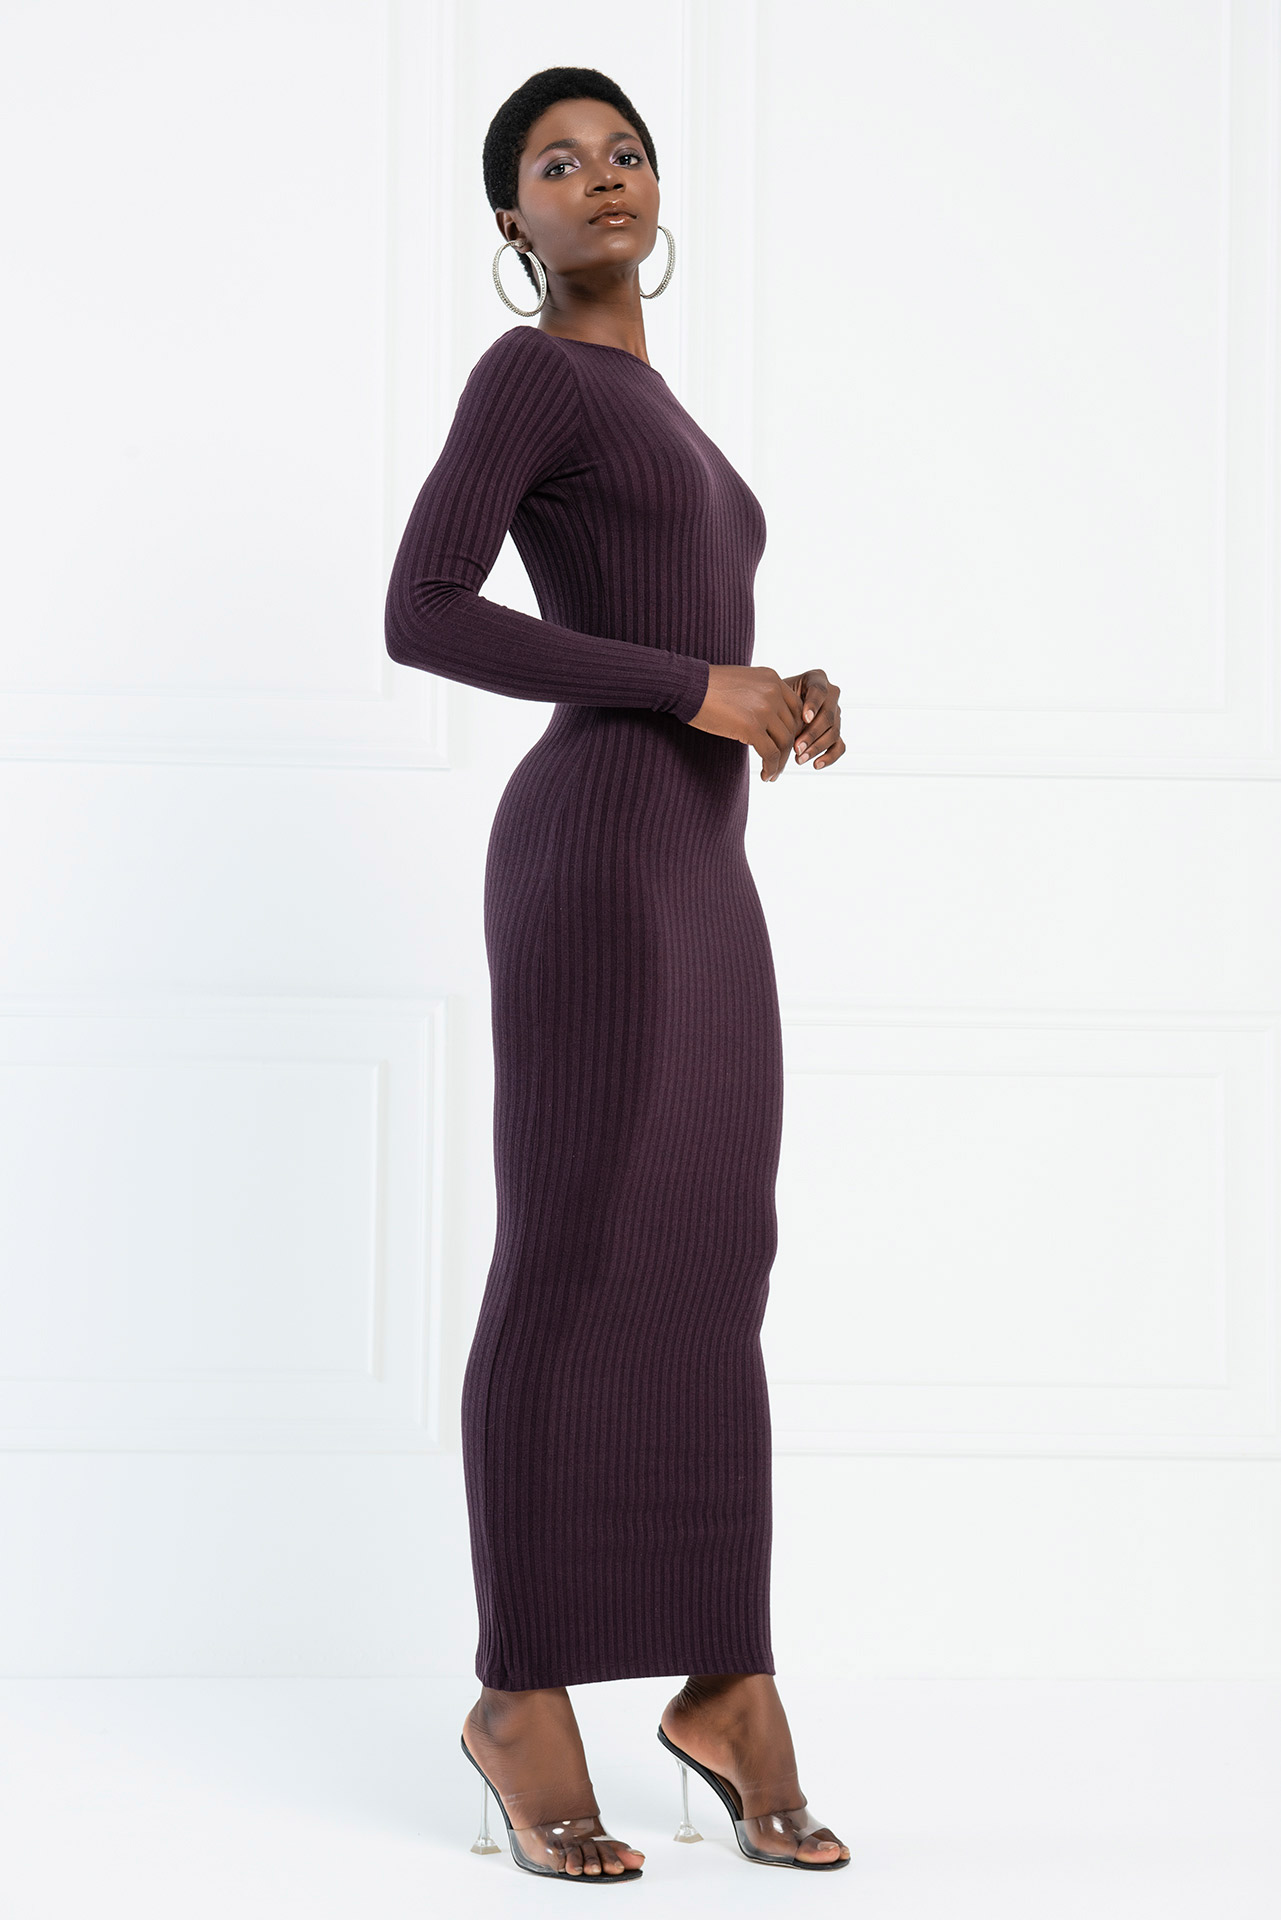 Backless Off Shoulder Dark Purple Dress